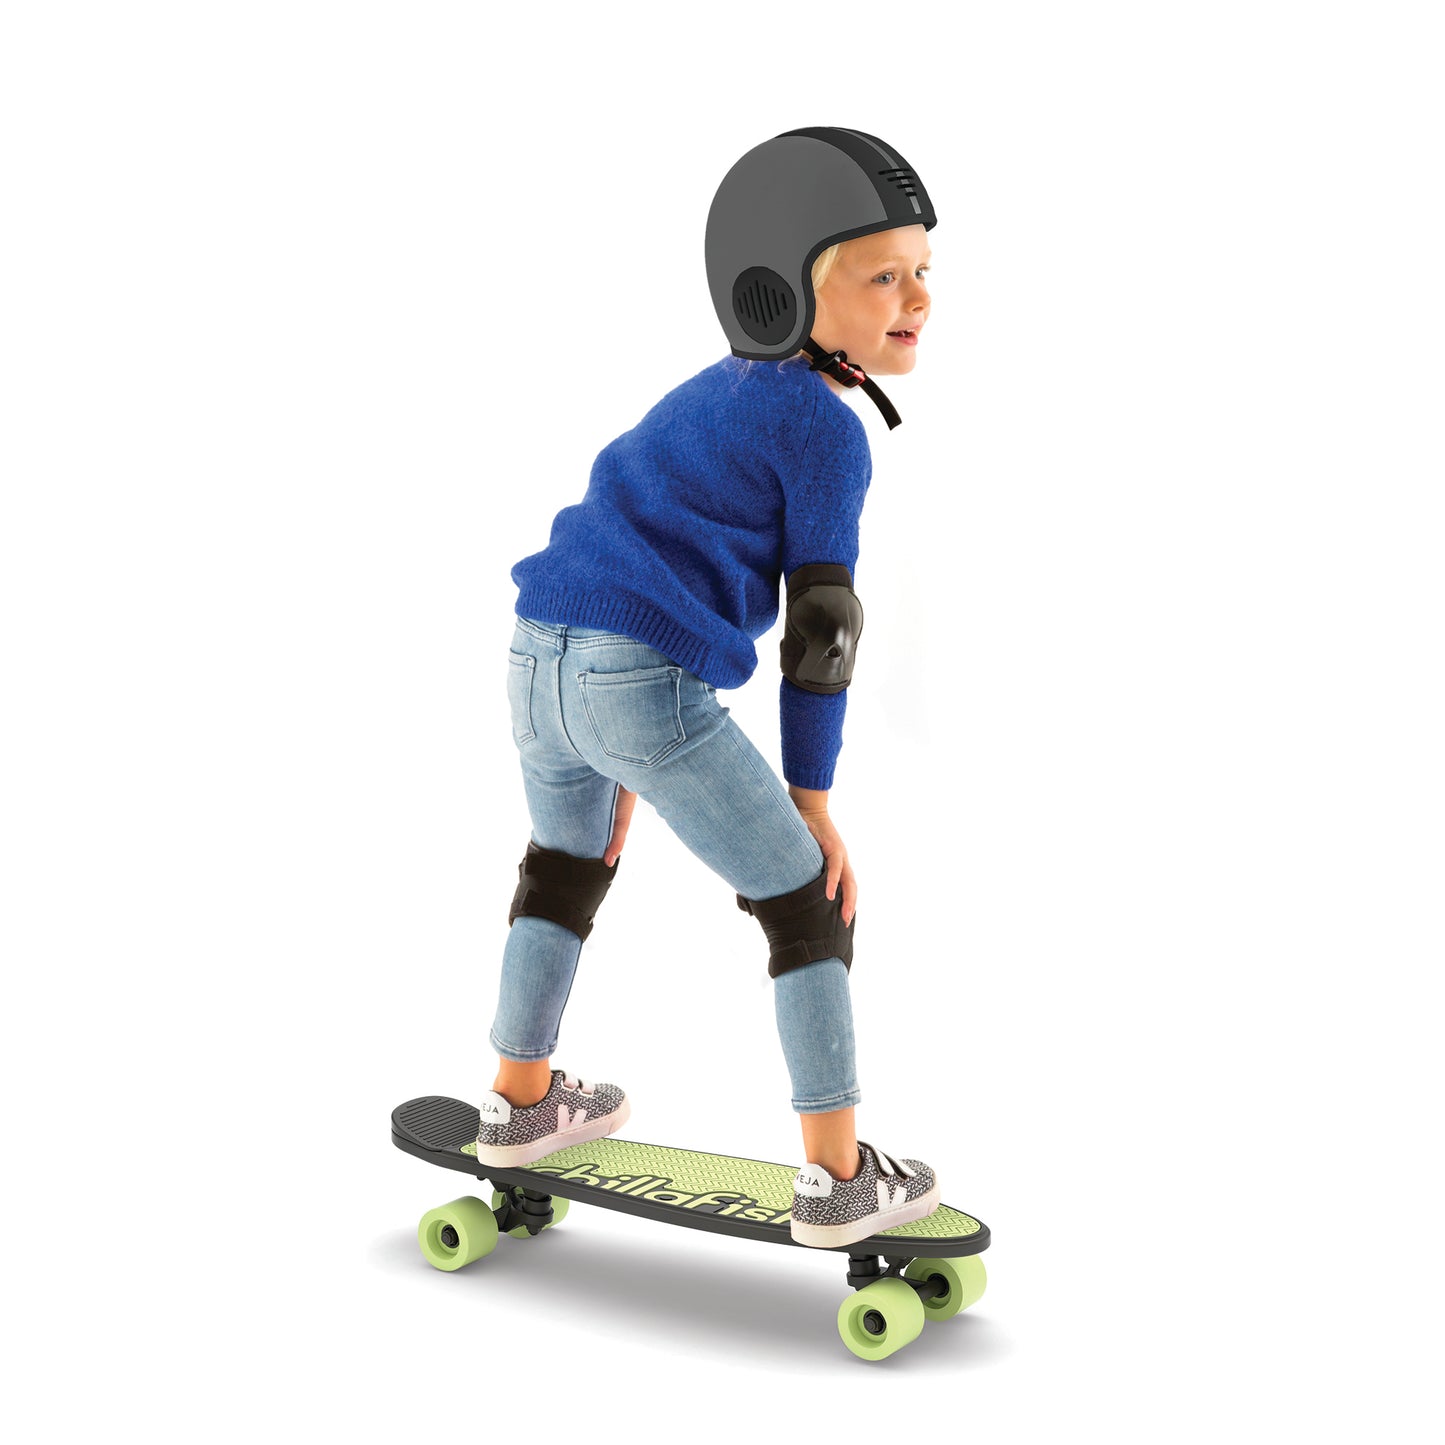 Skatieskootie - Skateboard und Roller in einem